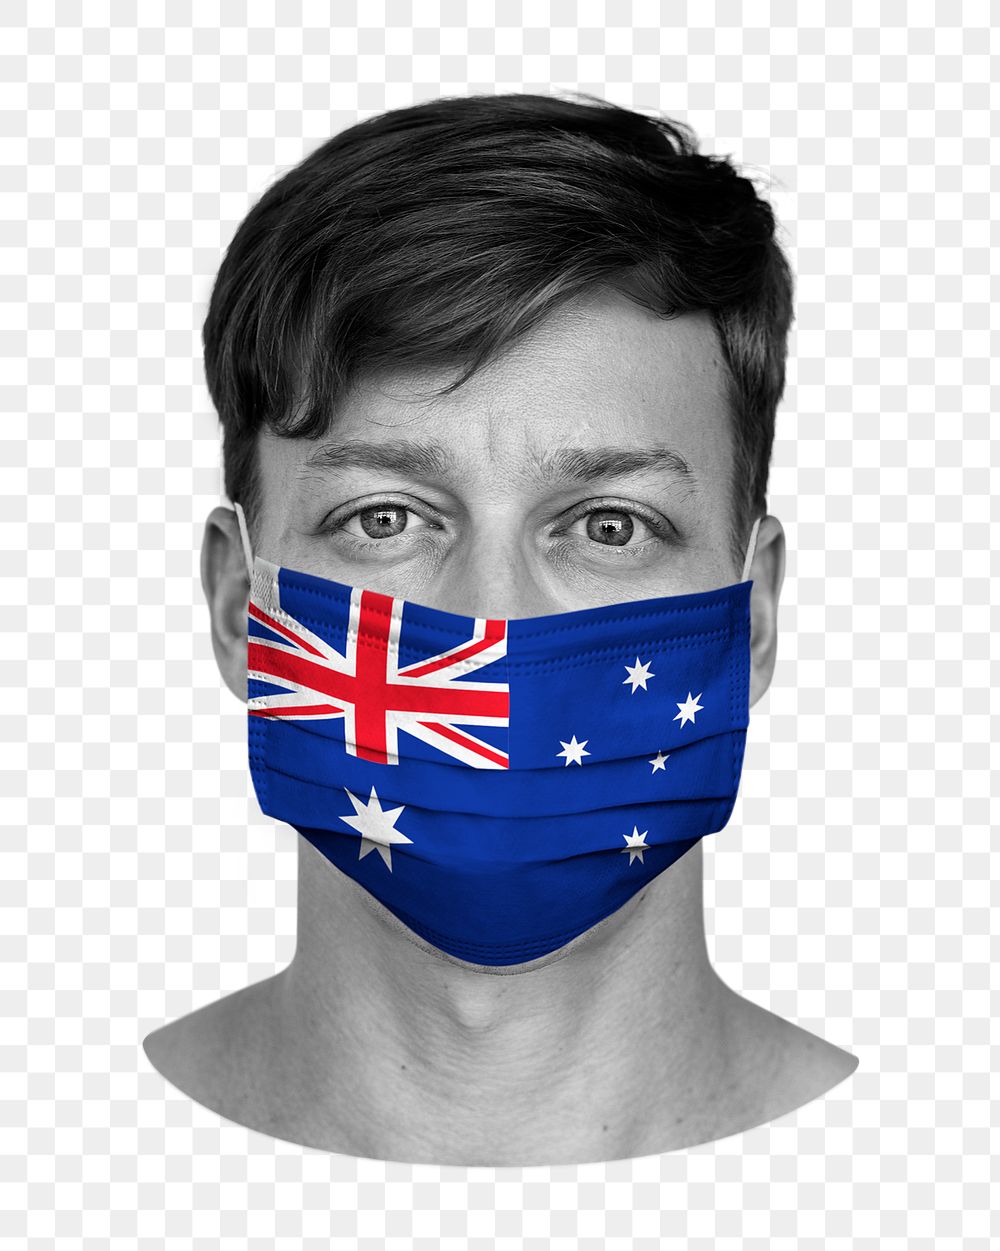 Png Australian flag mask, man image on transparent background